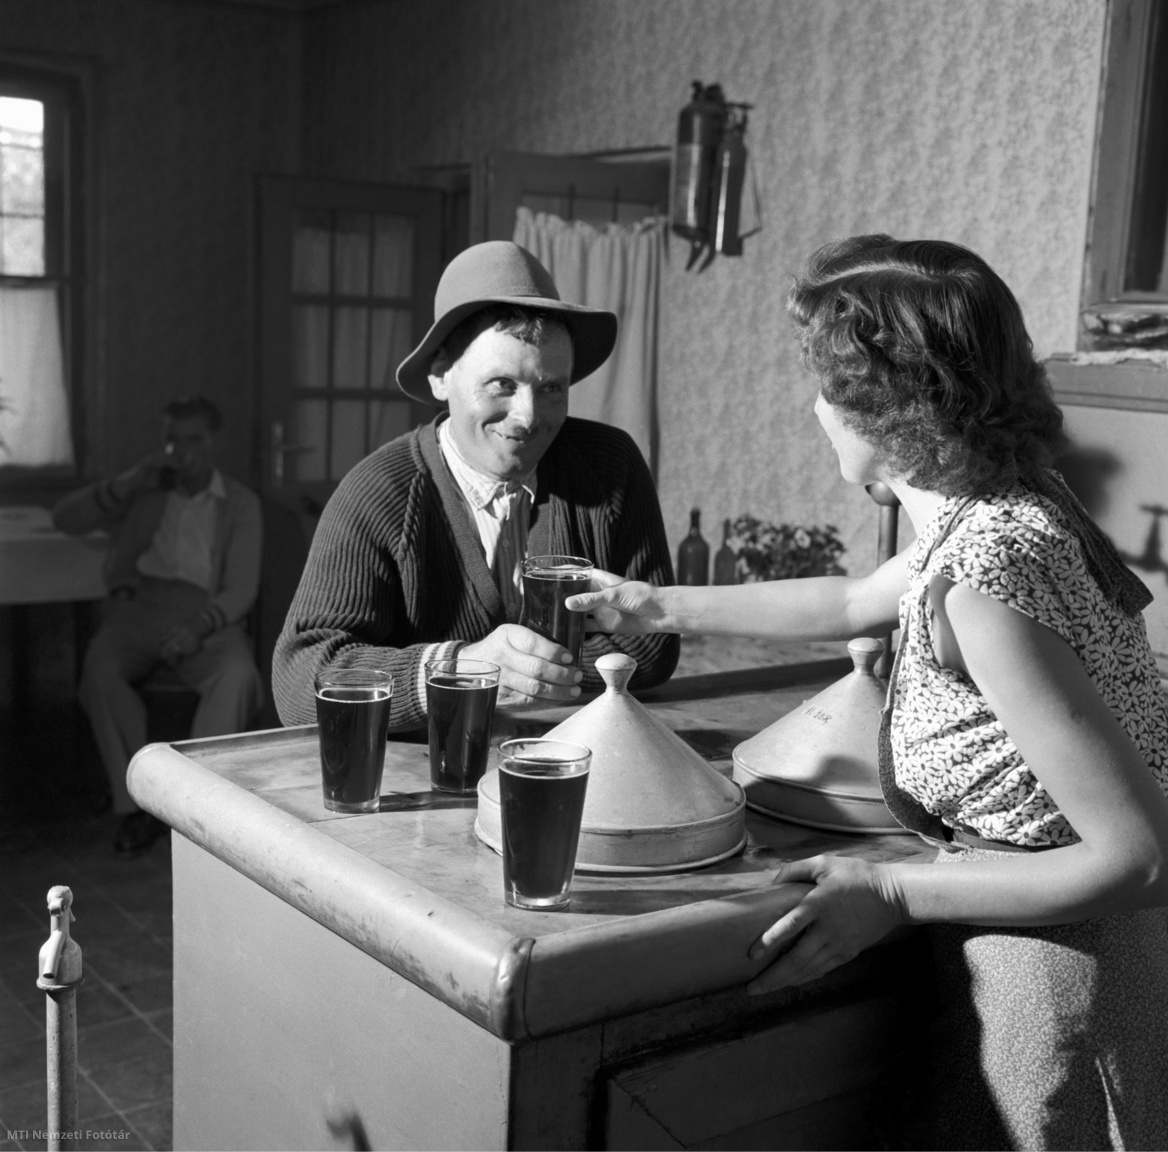 Bogyiszló, 1958. augusztus 17. Kocsmárosnő kiszolgál egy vendéget vörösborral a Gógai (Kutyatanyai) révészcsárdában